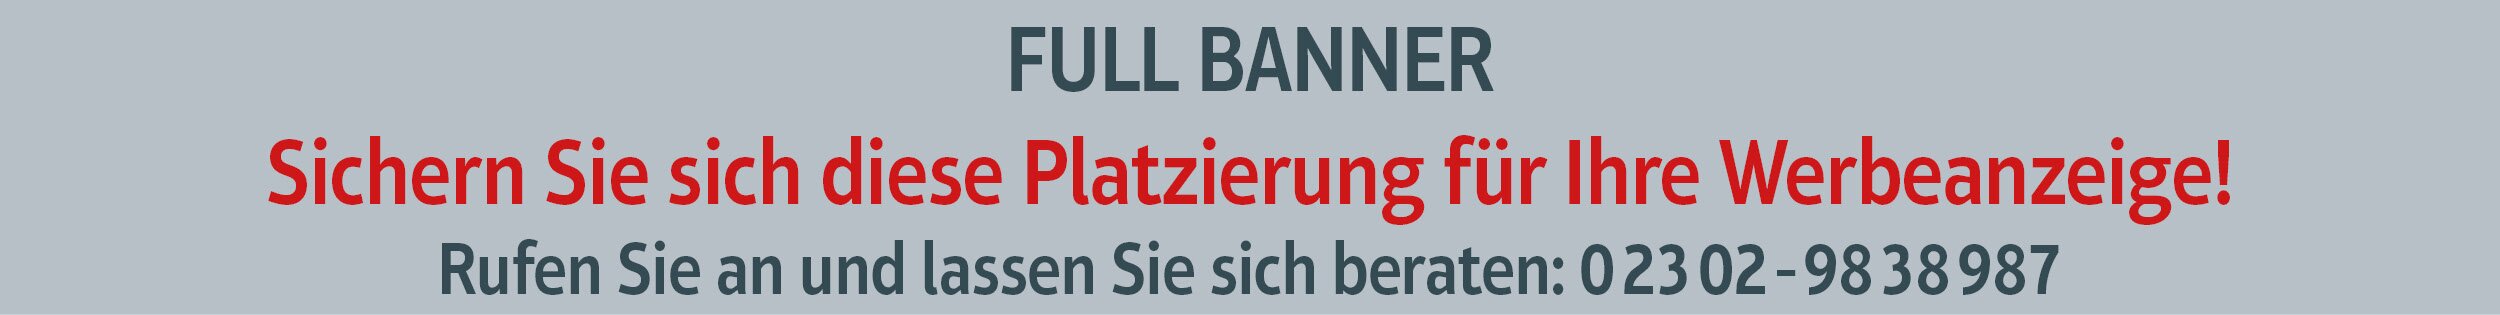 Full Banner 1200 x 151 Pixel_Platzhalteranzeige.jpg